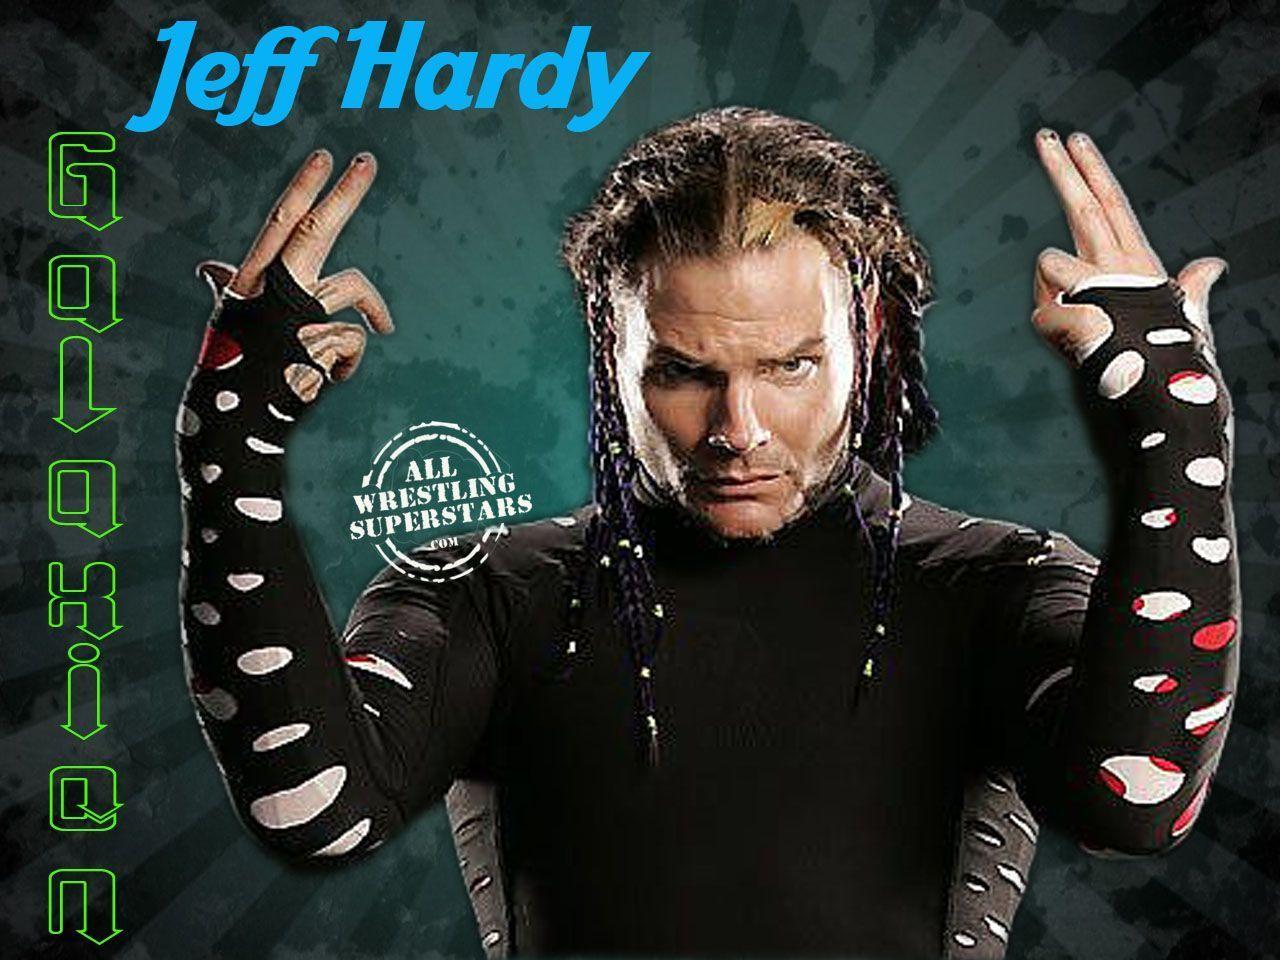 Jeff Hardy Wallpaper And, Jeff Hardy Wallpaper. Jeff